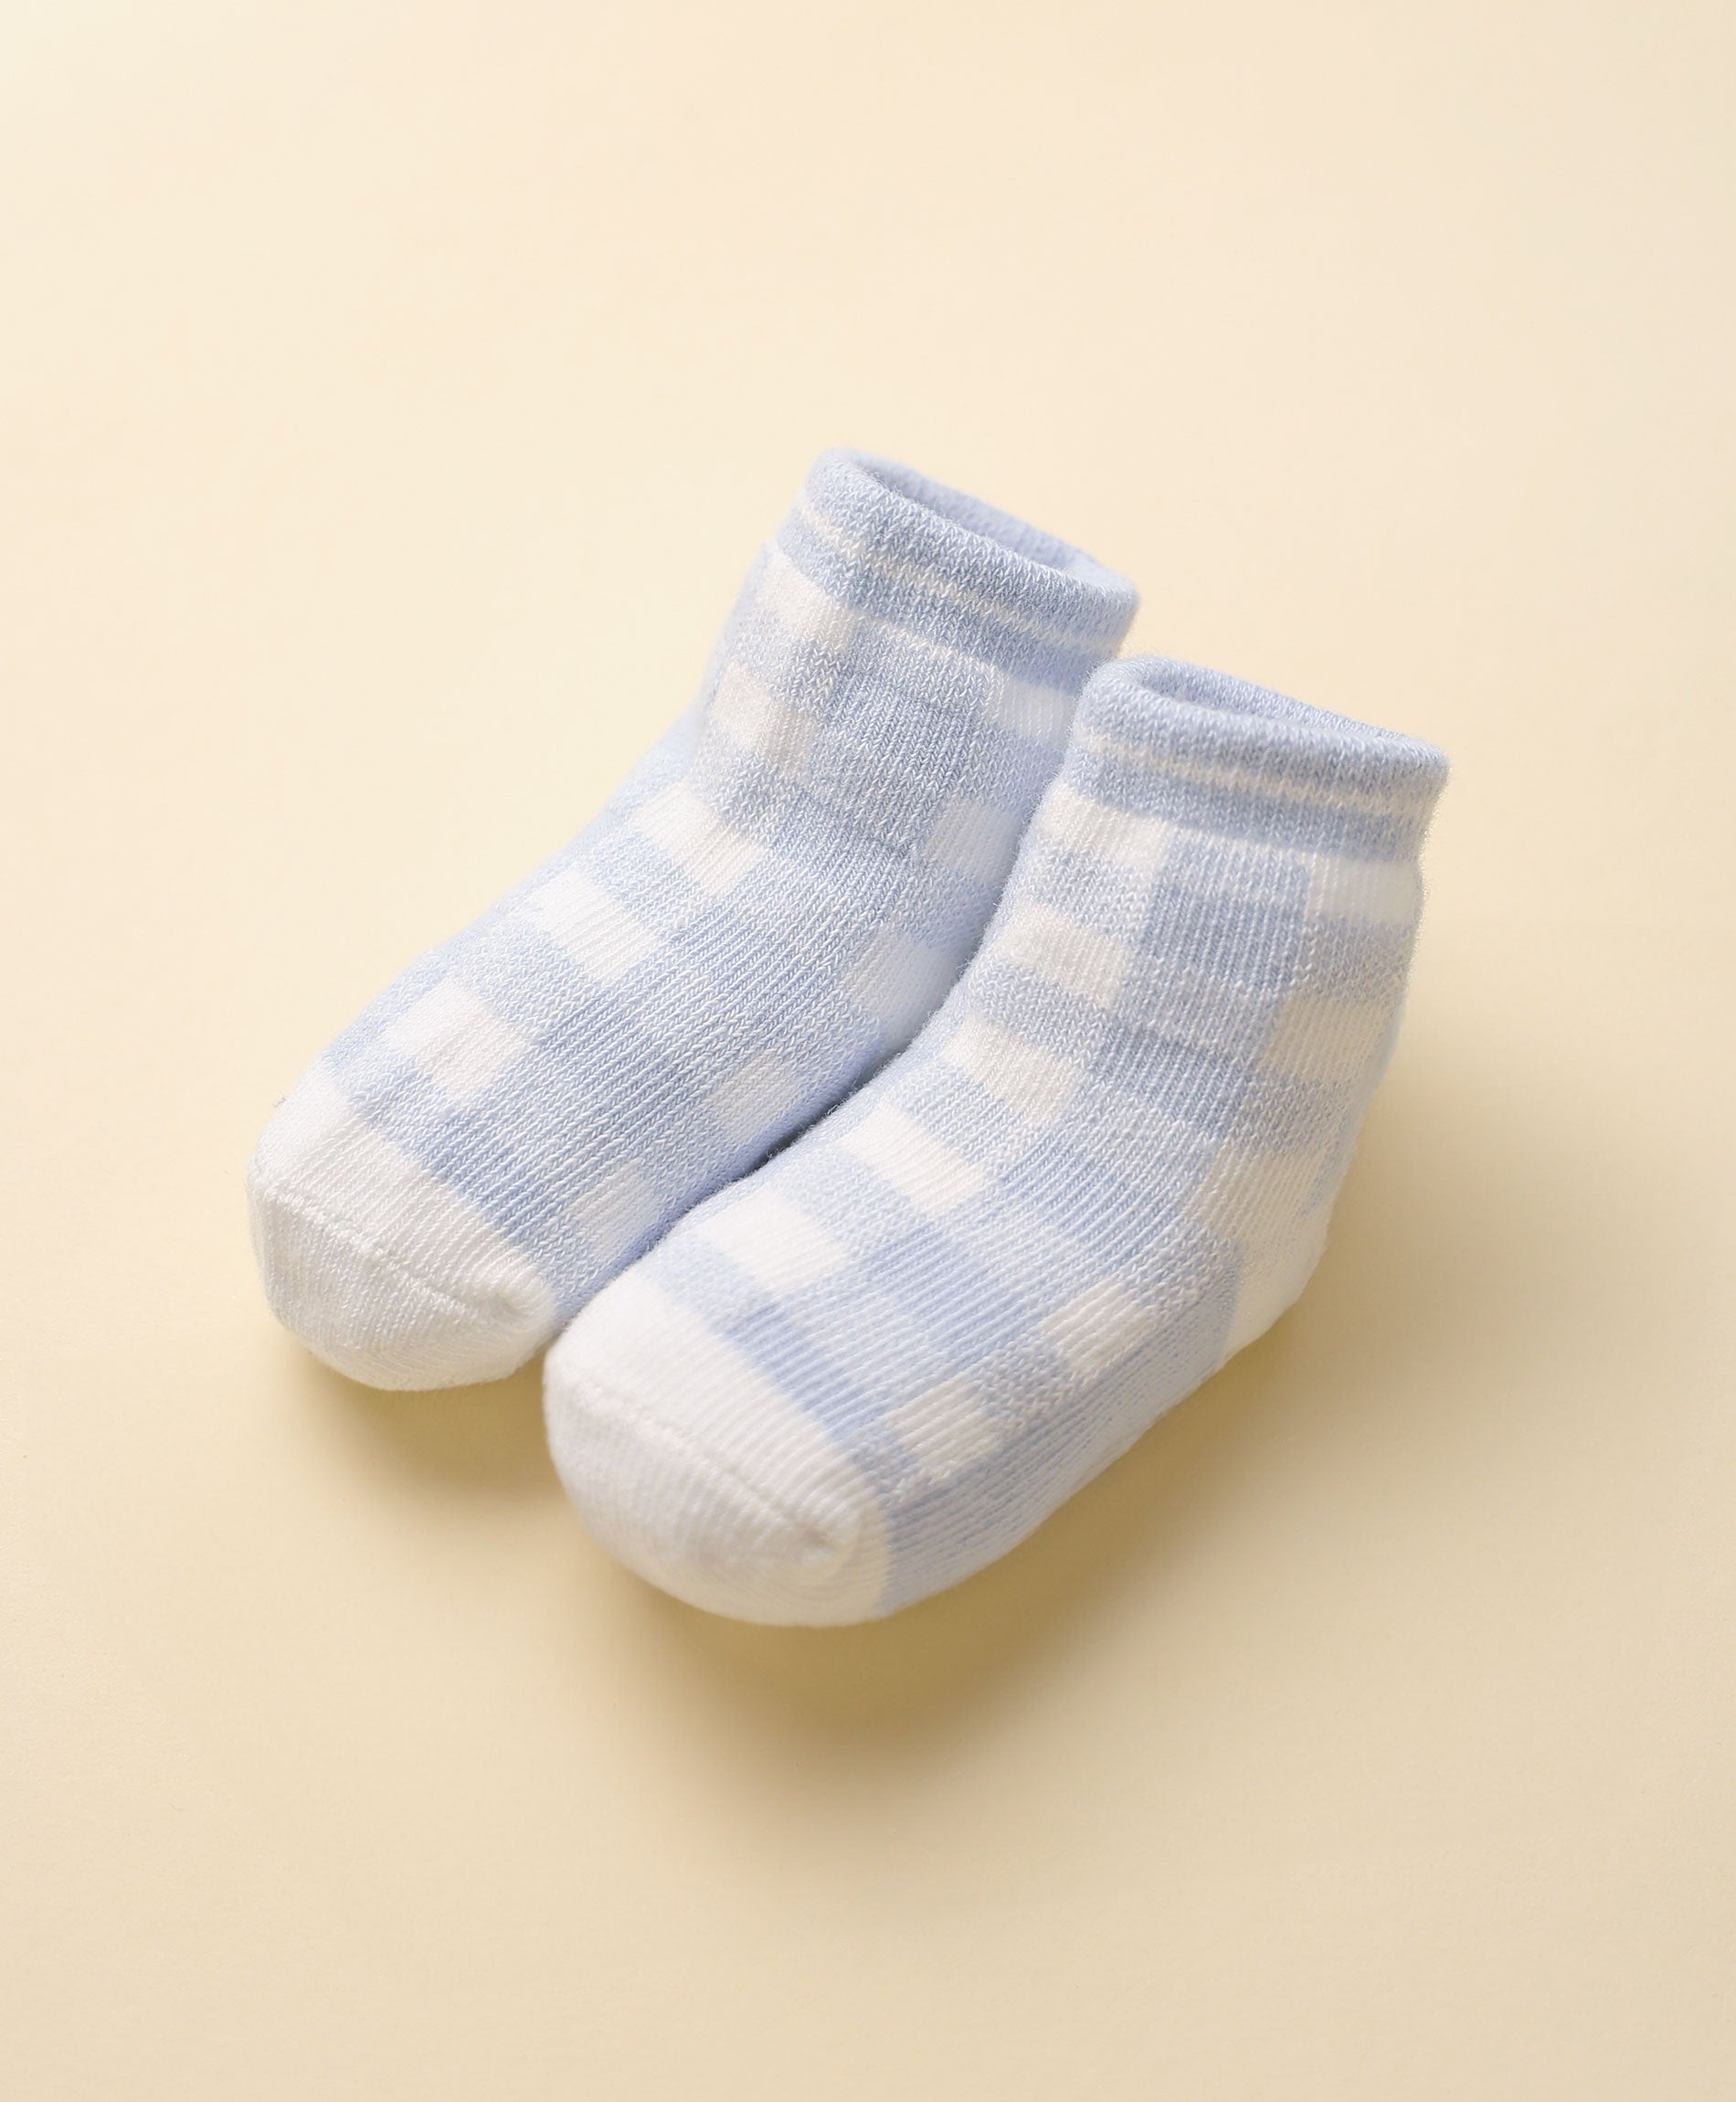 Socks - Light blue plaid